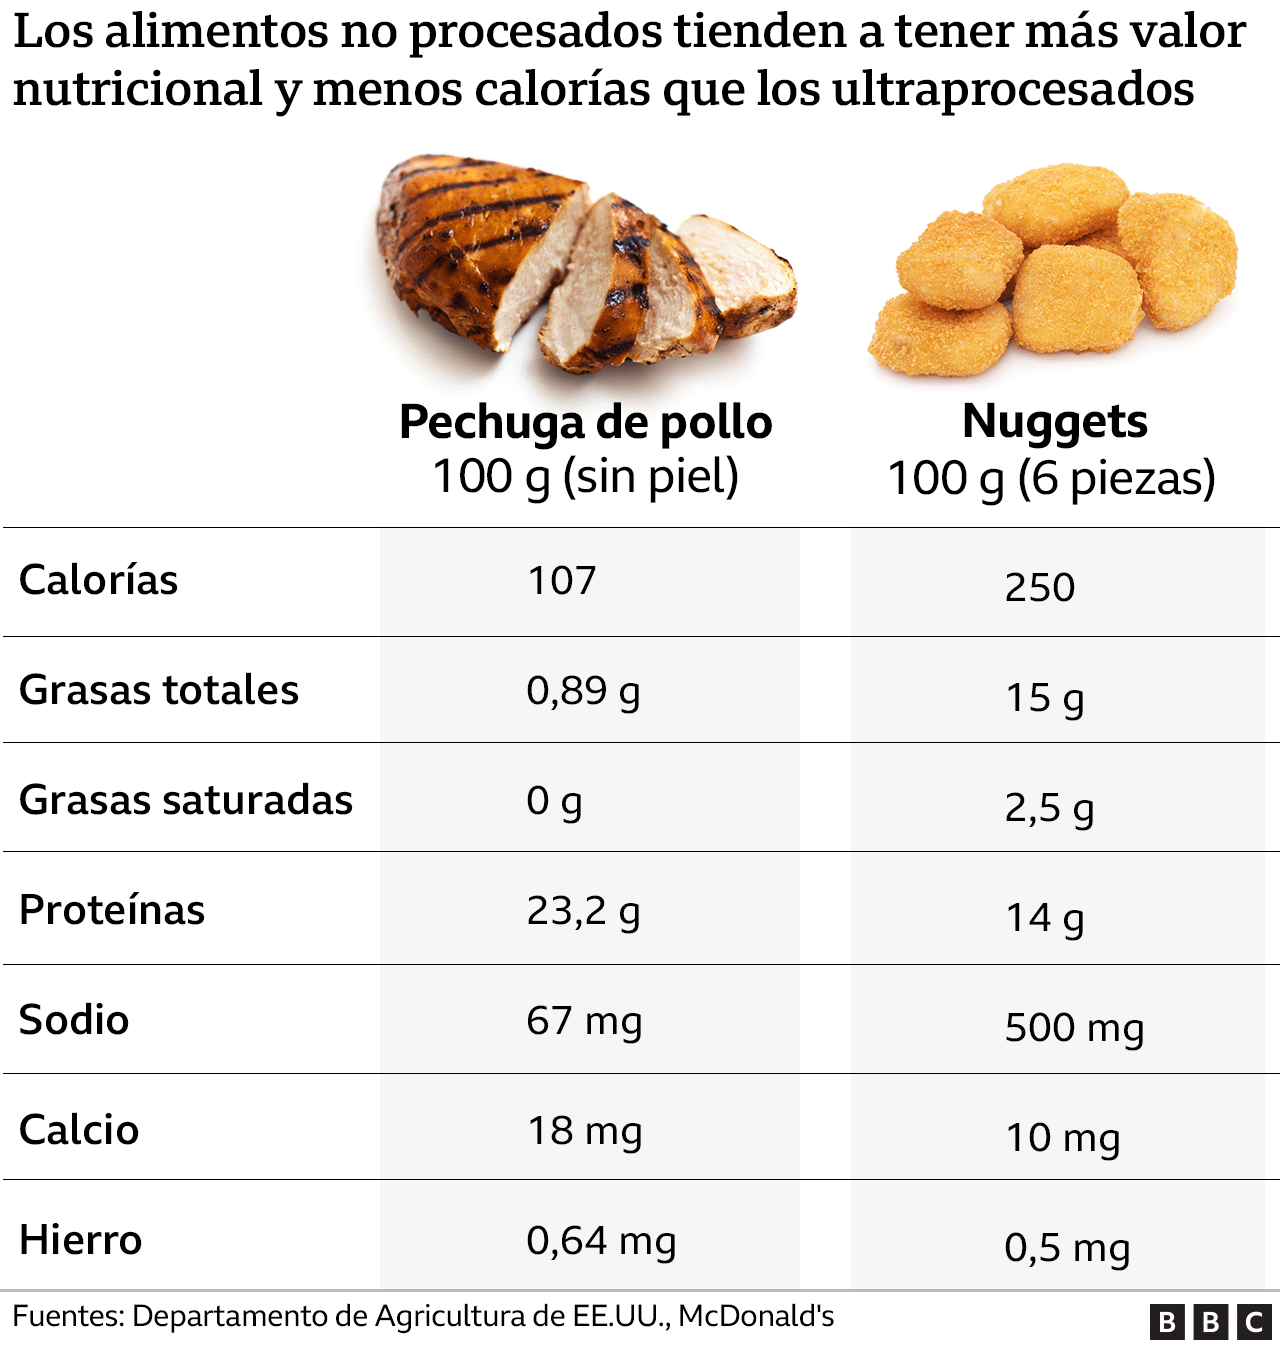 Gráfico que compara el valor nutricional de una pechuga de pollo y unos nuggets